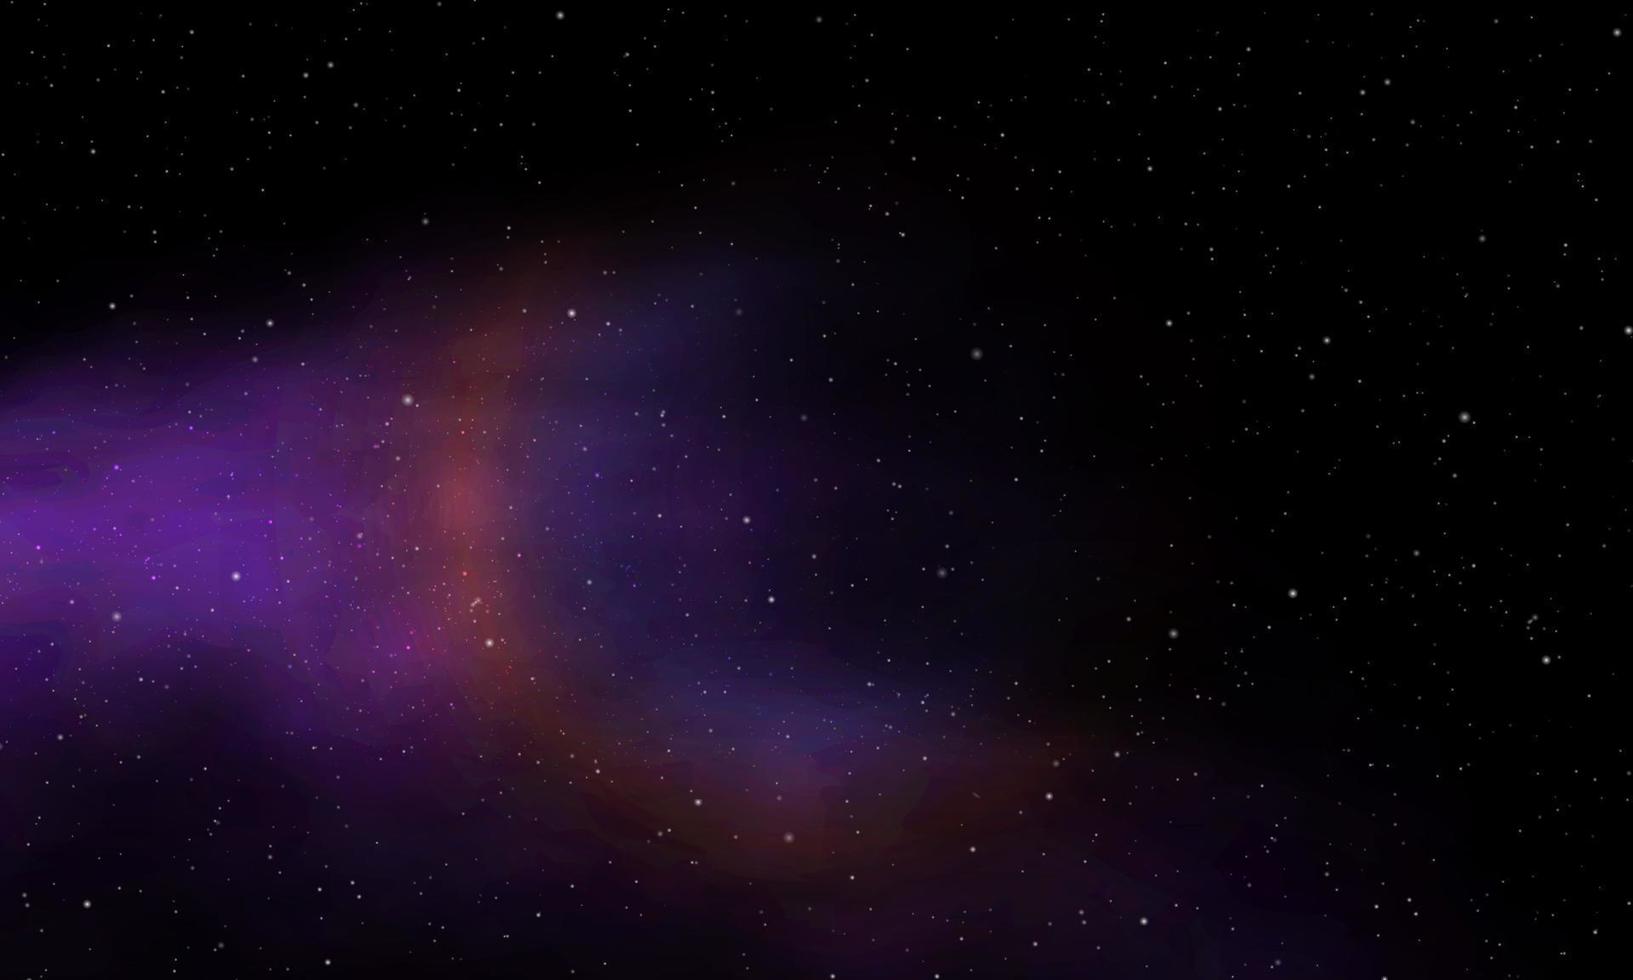 univers infini réaliste nuit étoilée nébuleuse brillante poussière d'étoile couleur magique galaxie fond vecteur